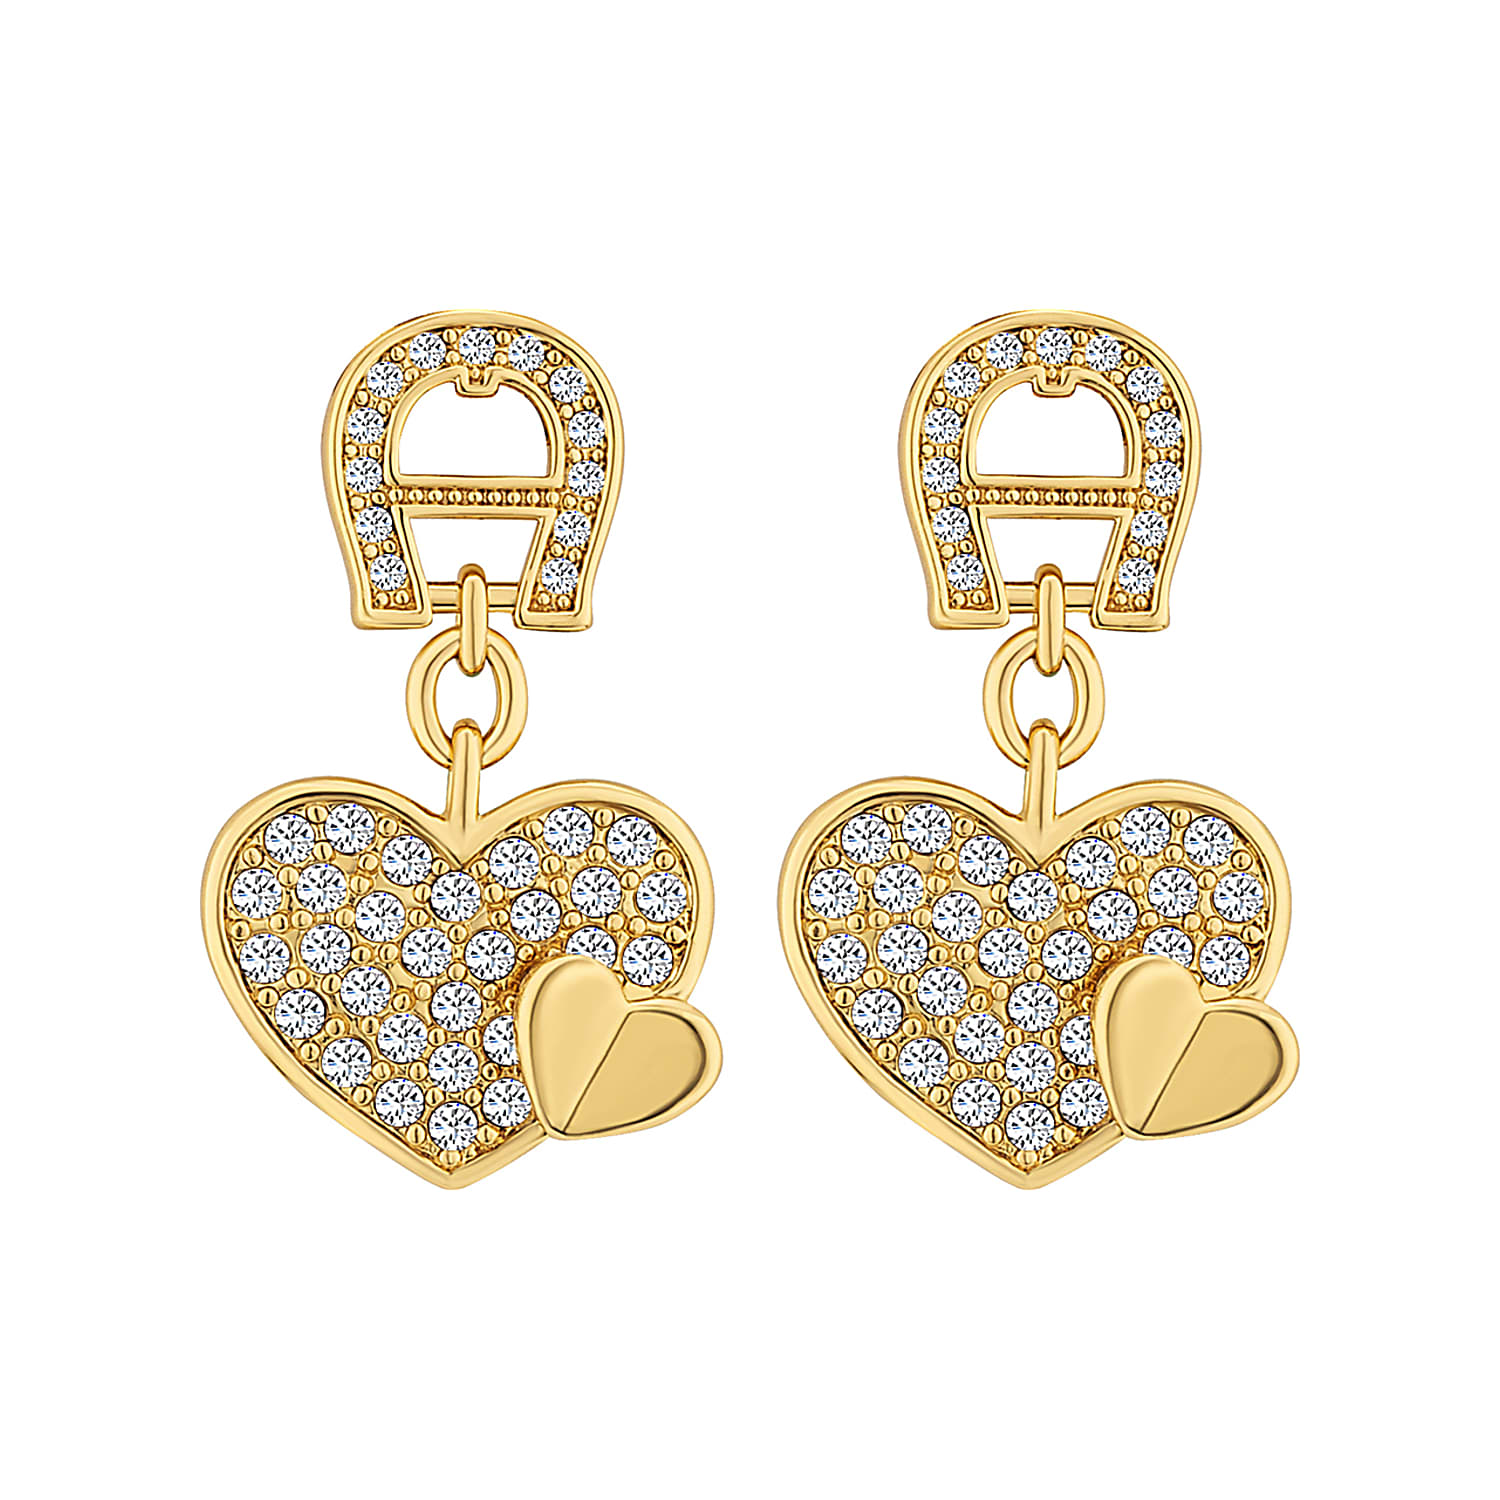 A-Logo earrings with heart